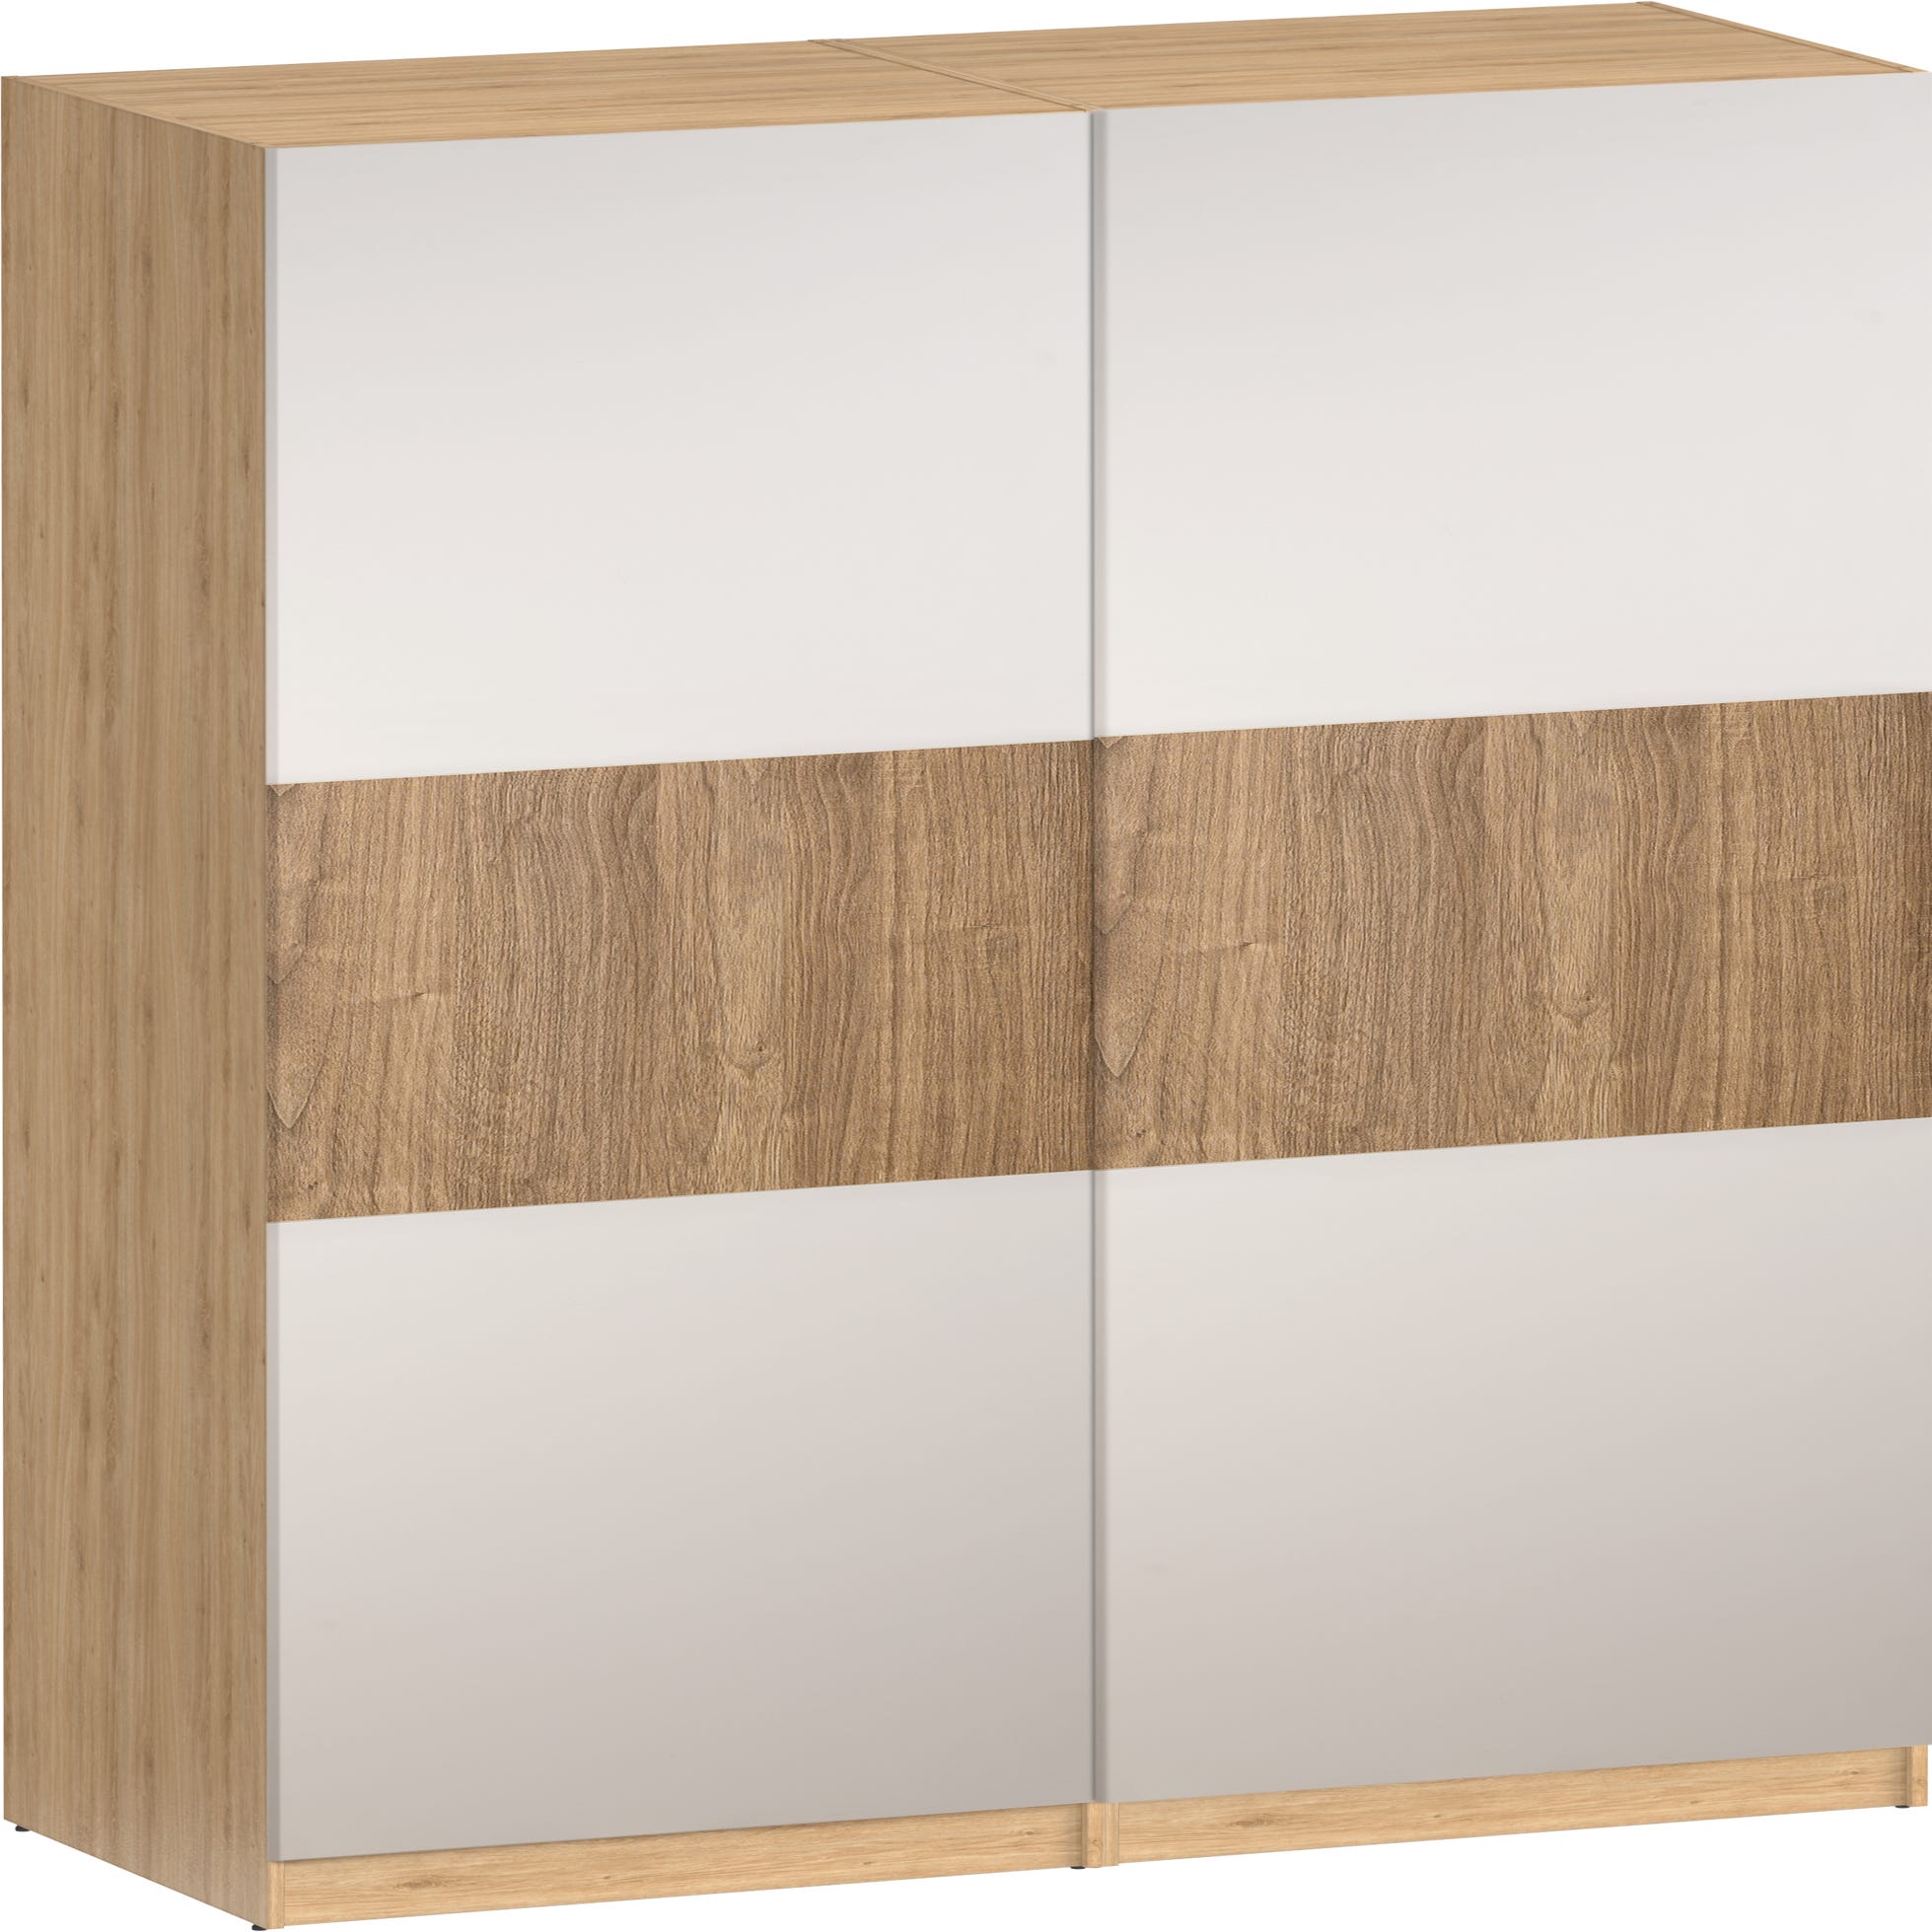 Armario de madera blanco con 2 puertas correderas y 3 baldas 120x50 cm